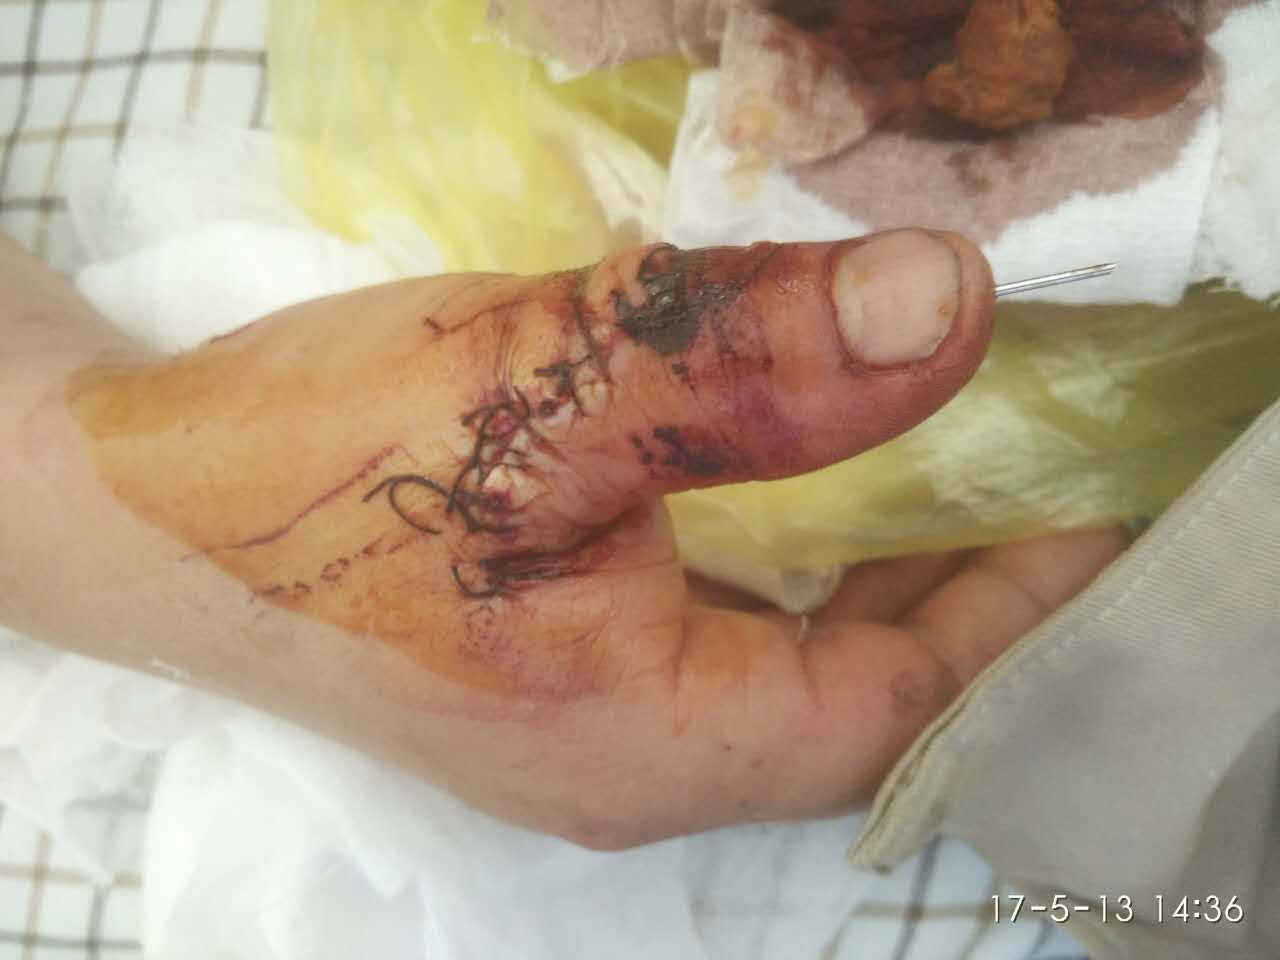 断指再植患者大拇指已能自由活动